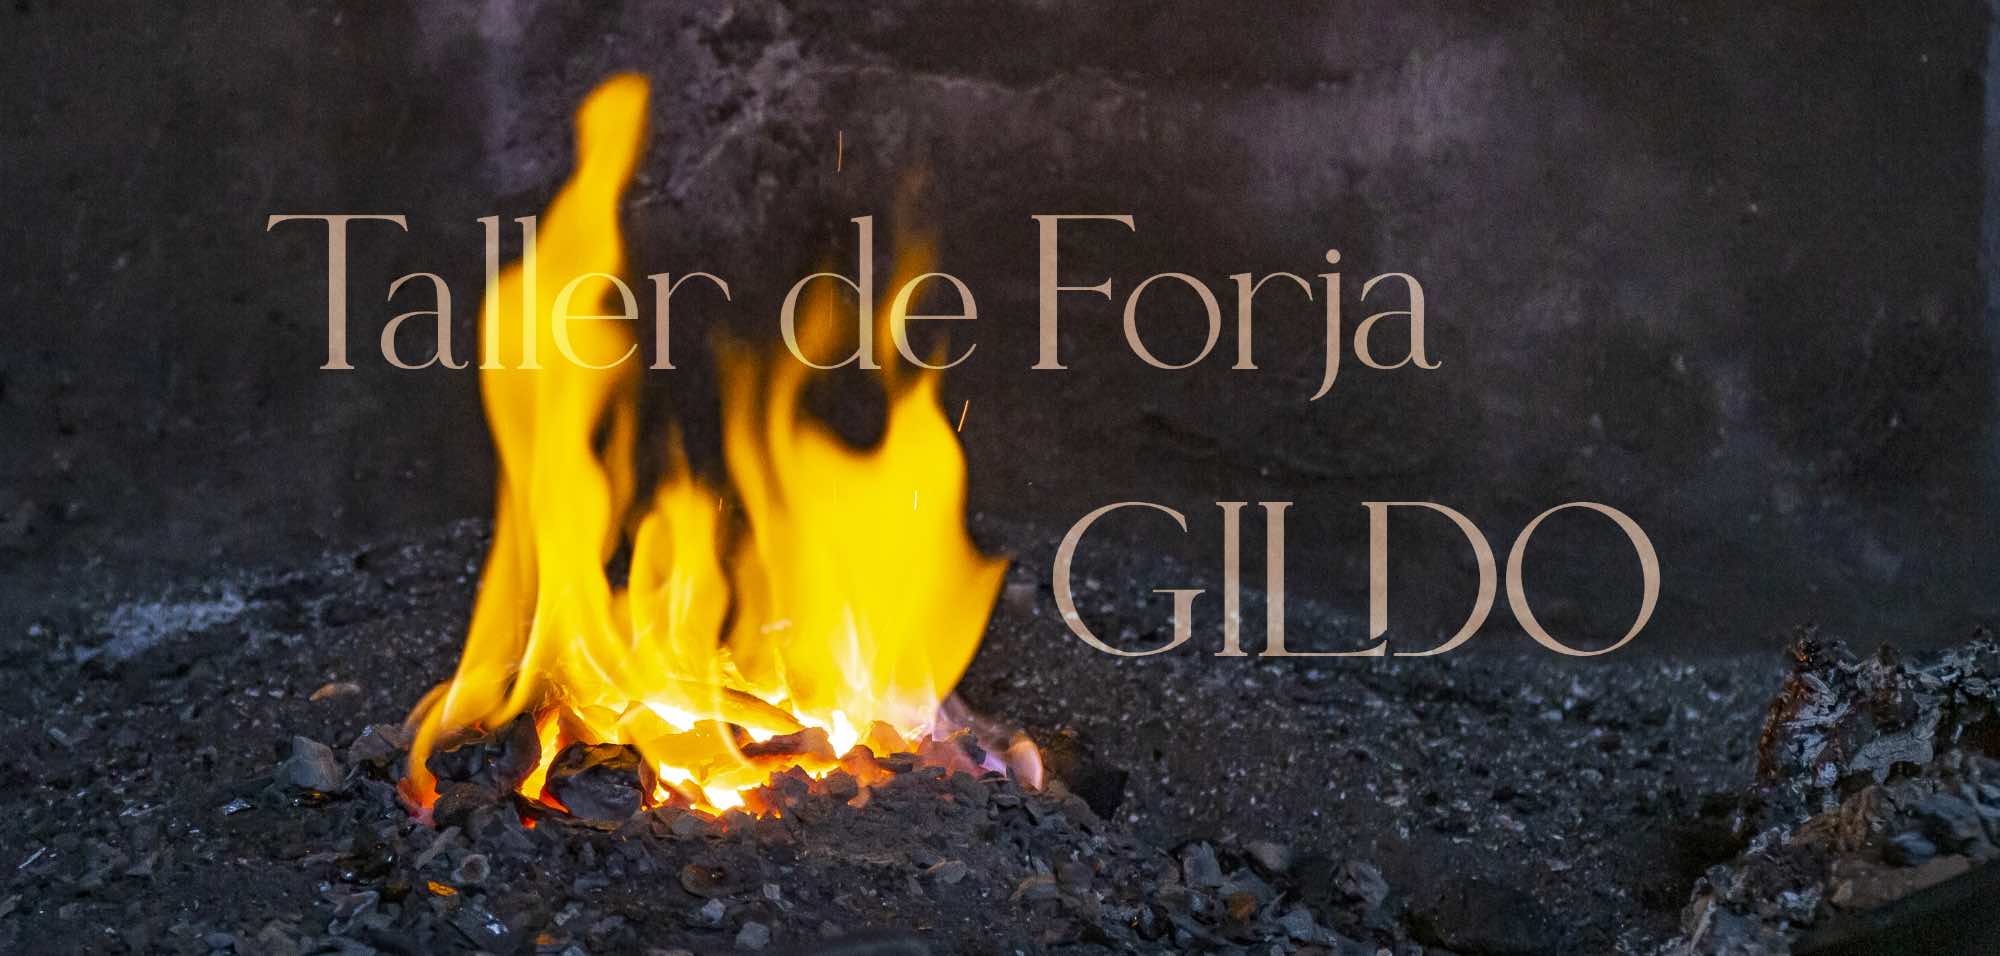 Taller de Forja Gildo Forja Artesanal con fragua de carbón